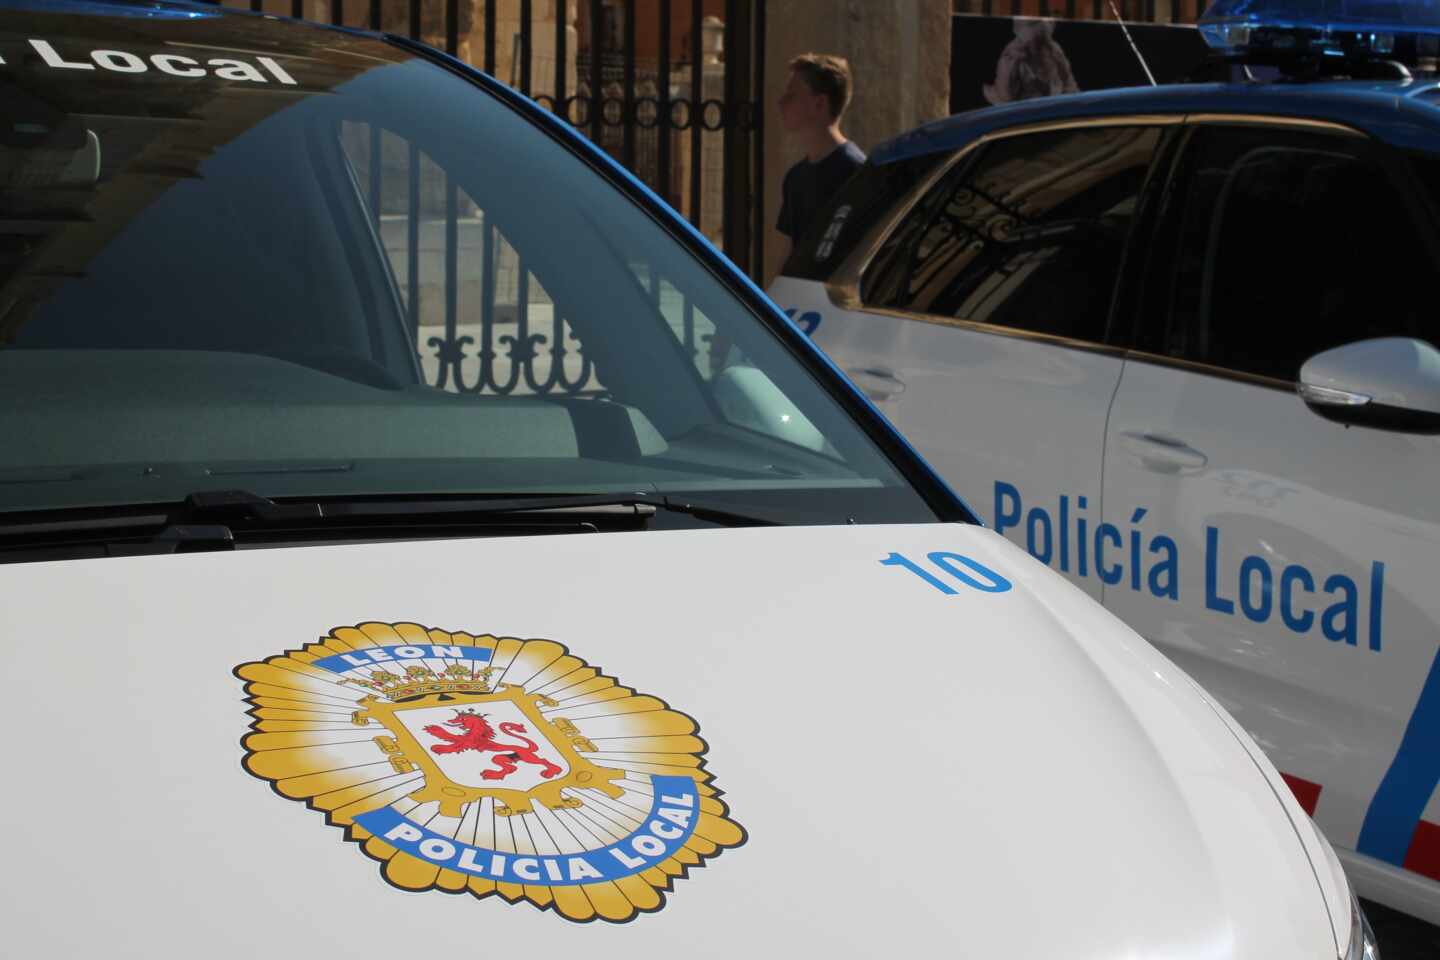 Dos policías de León reciben una paliza al intentar identificar a varias personas sin mascarilla